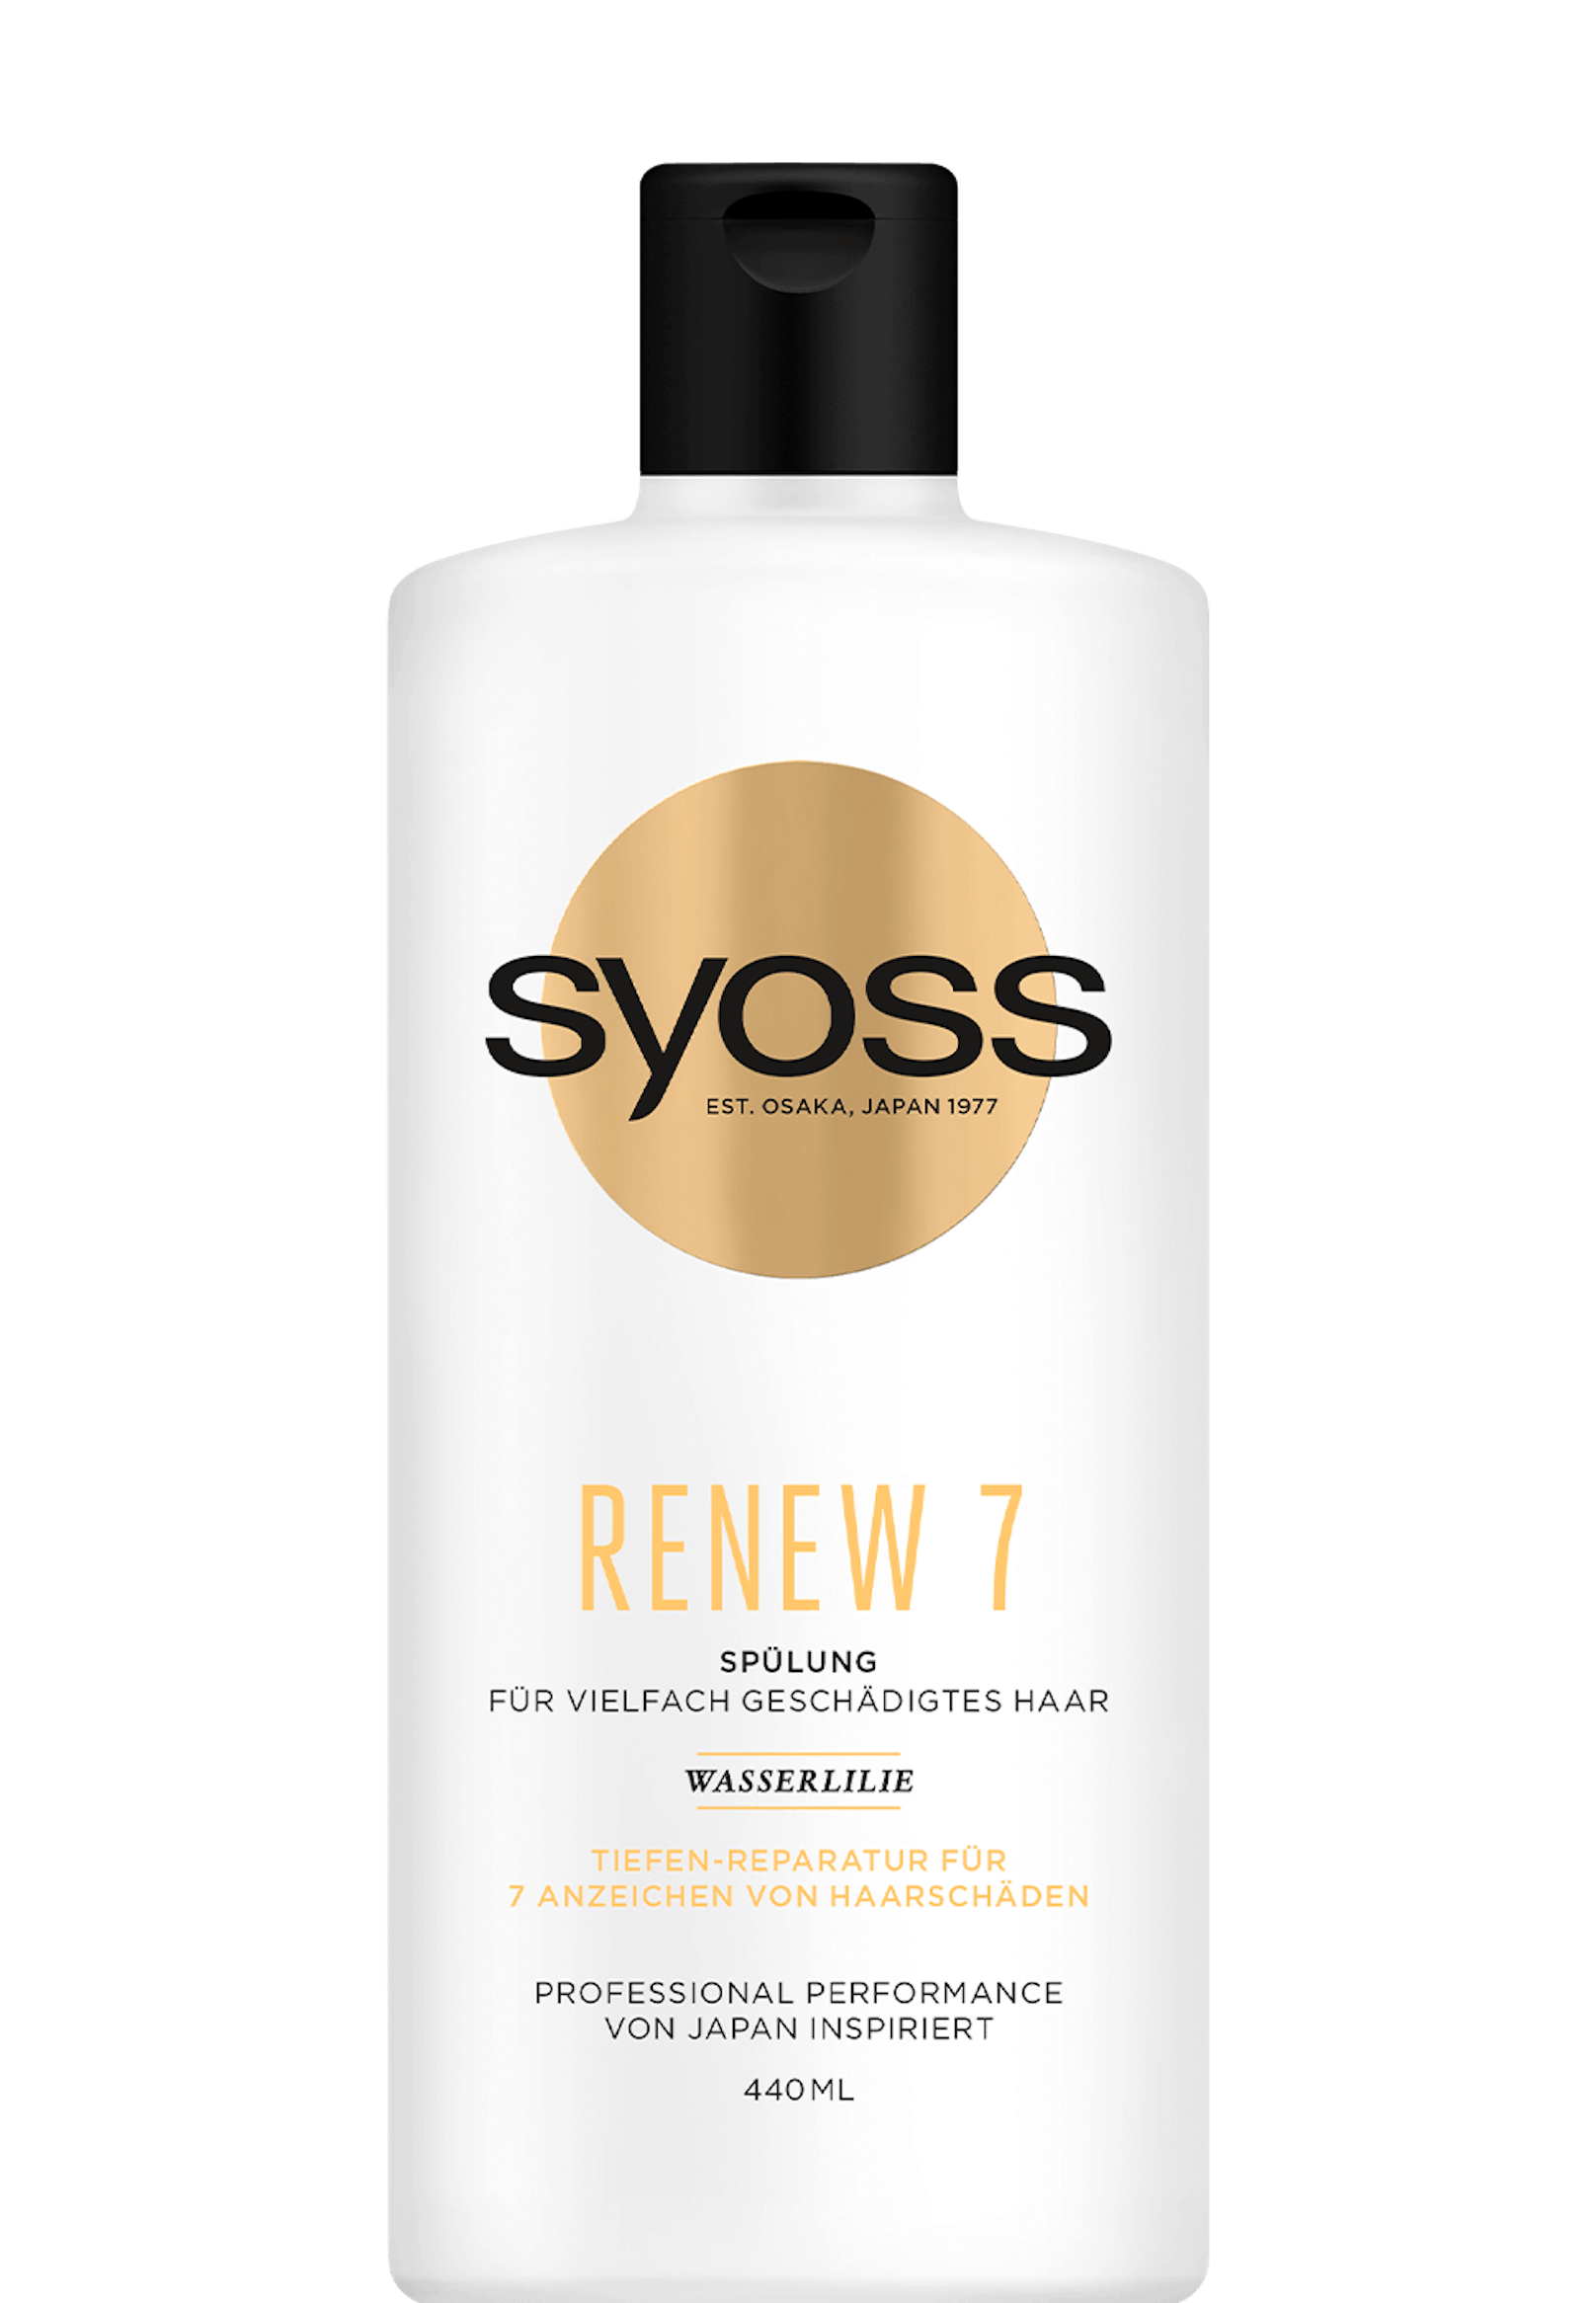 <strong>SYOSS Renew 7 Spülung und Shampoo:&nbsp;</strong>Syoss verringert die Füllmenge und erhöht den Preis. In der neuen Flasche befinden sich 440 Milliliter des Produkts, in der alten 500 Milliliter.